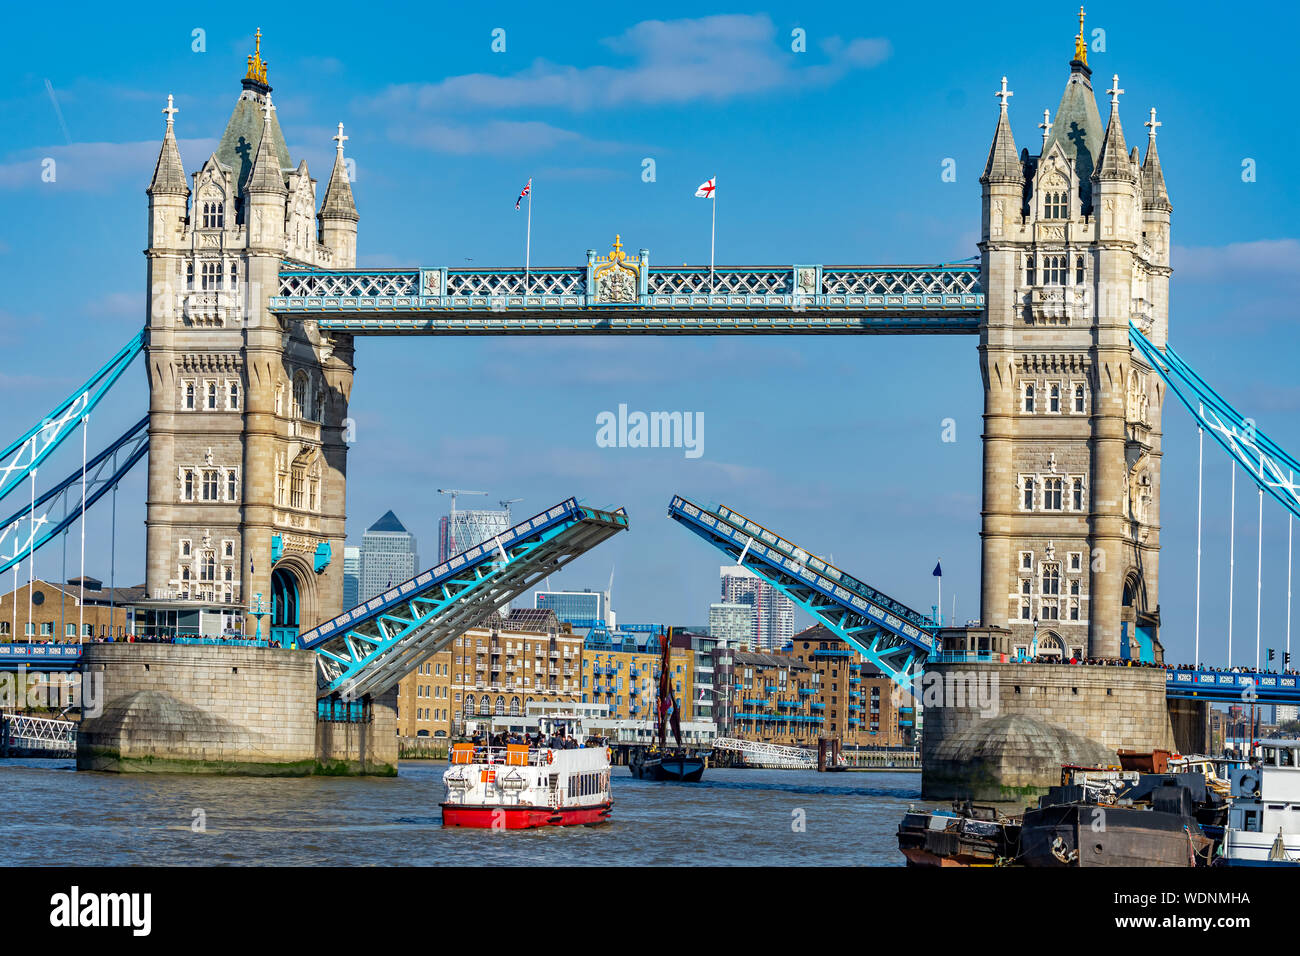 Vue rapprochée du célèbre monument de London Tower Bridge avec portes ouvertes en Angleterre, Royaume-Uni Banque D'Images